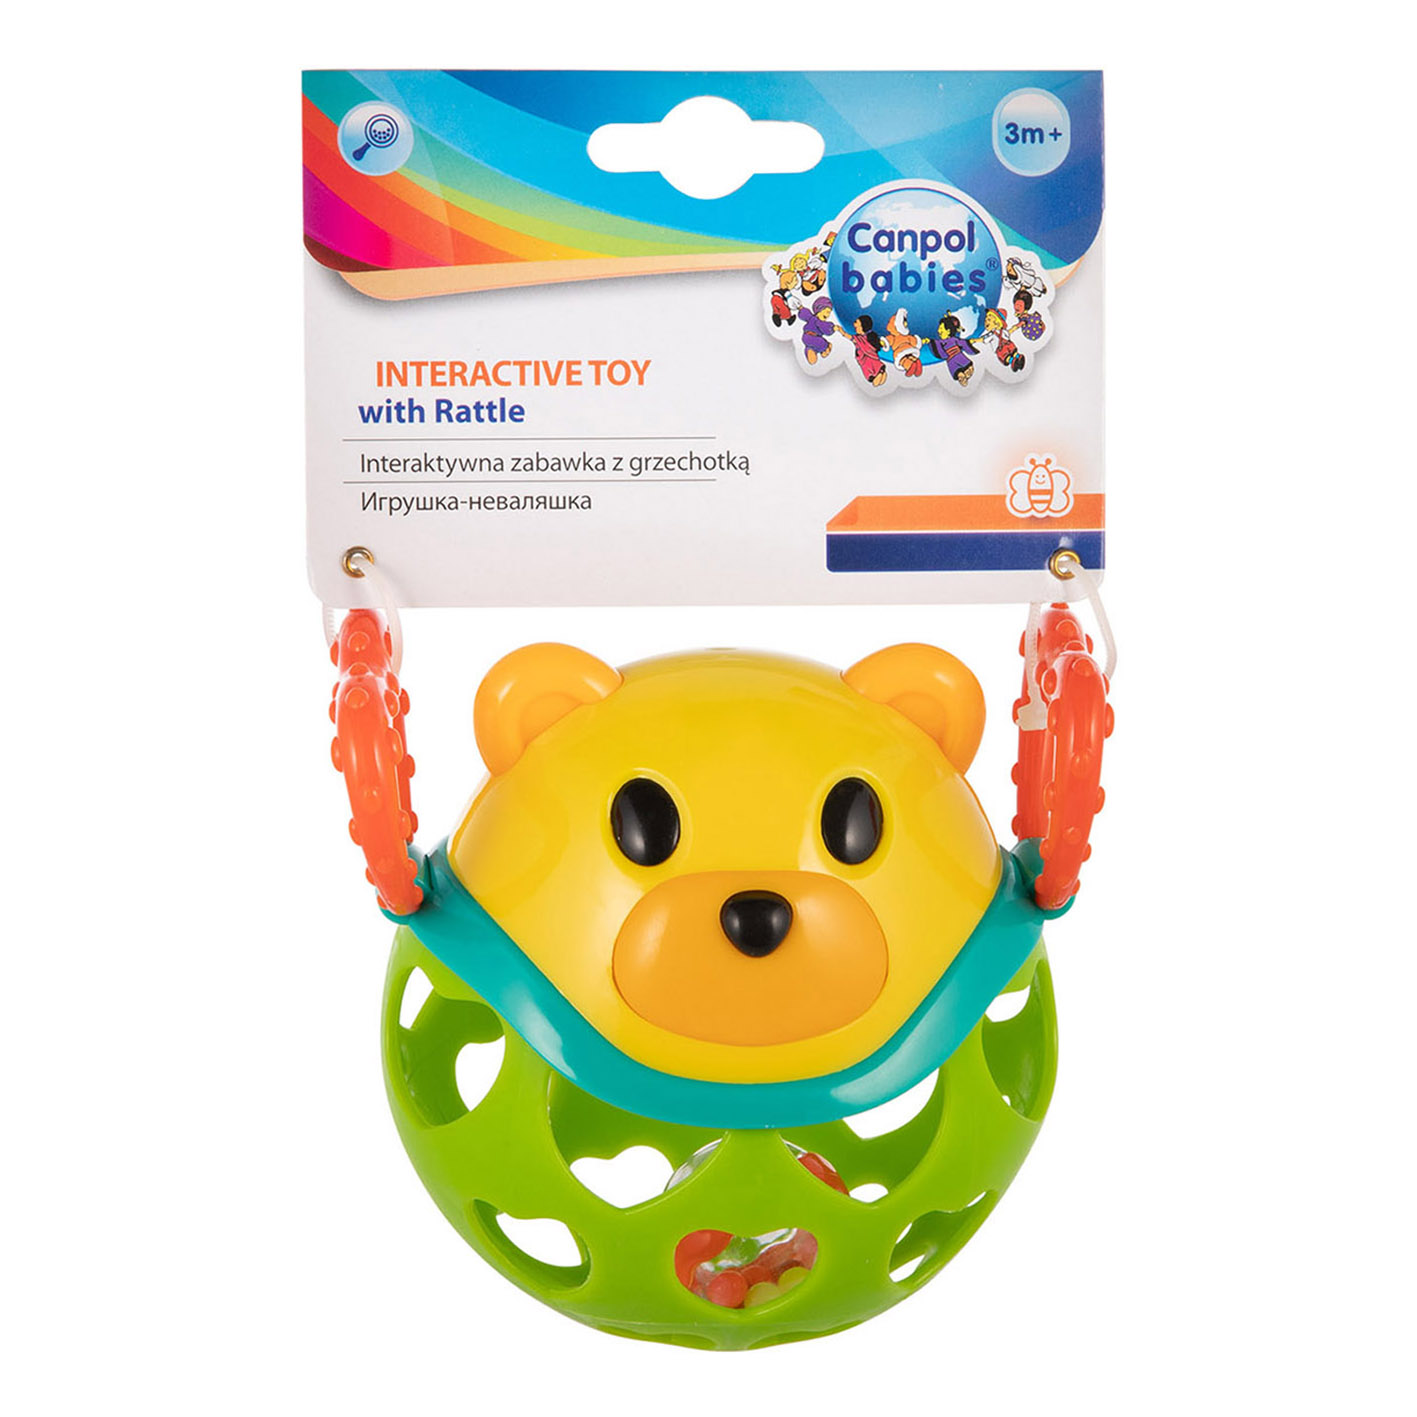 Интерактивная игрушка Canpol babies с погремушкой